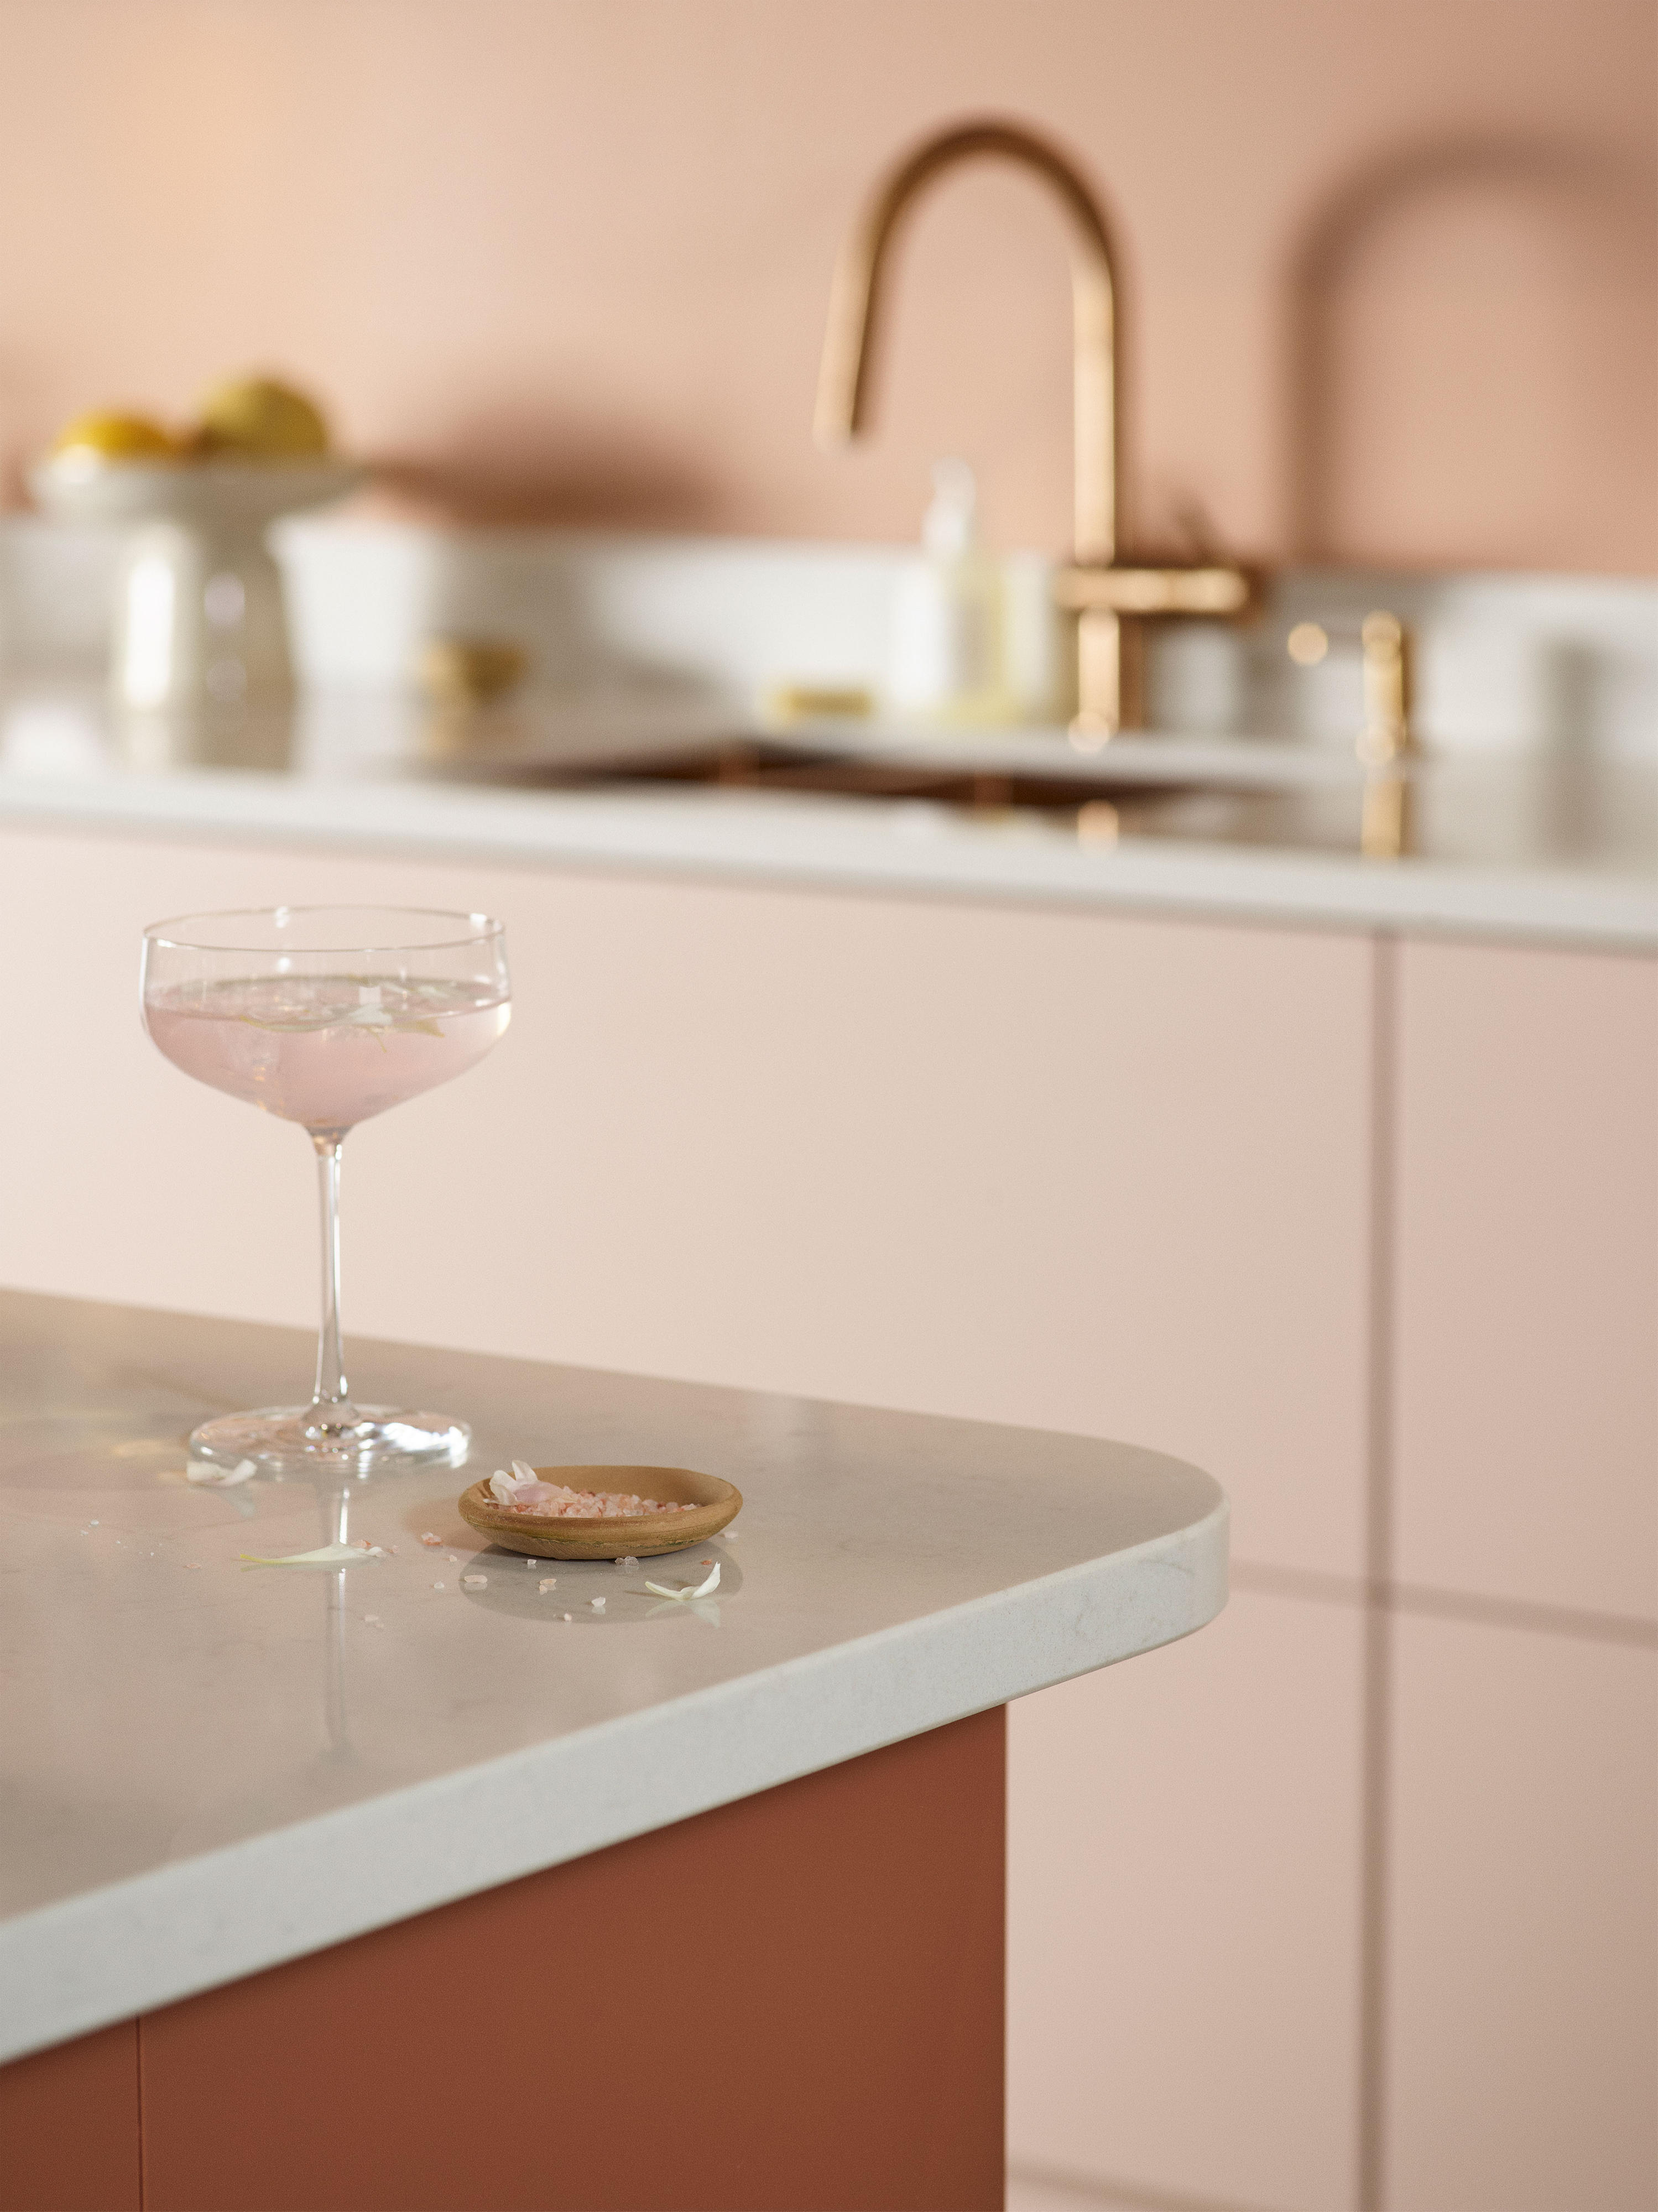 Glass standing on a kitchen island in a Epoq Trend Blush & Sienna kitchen